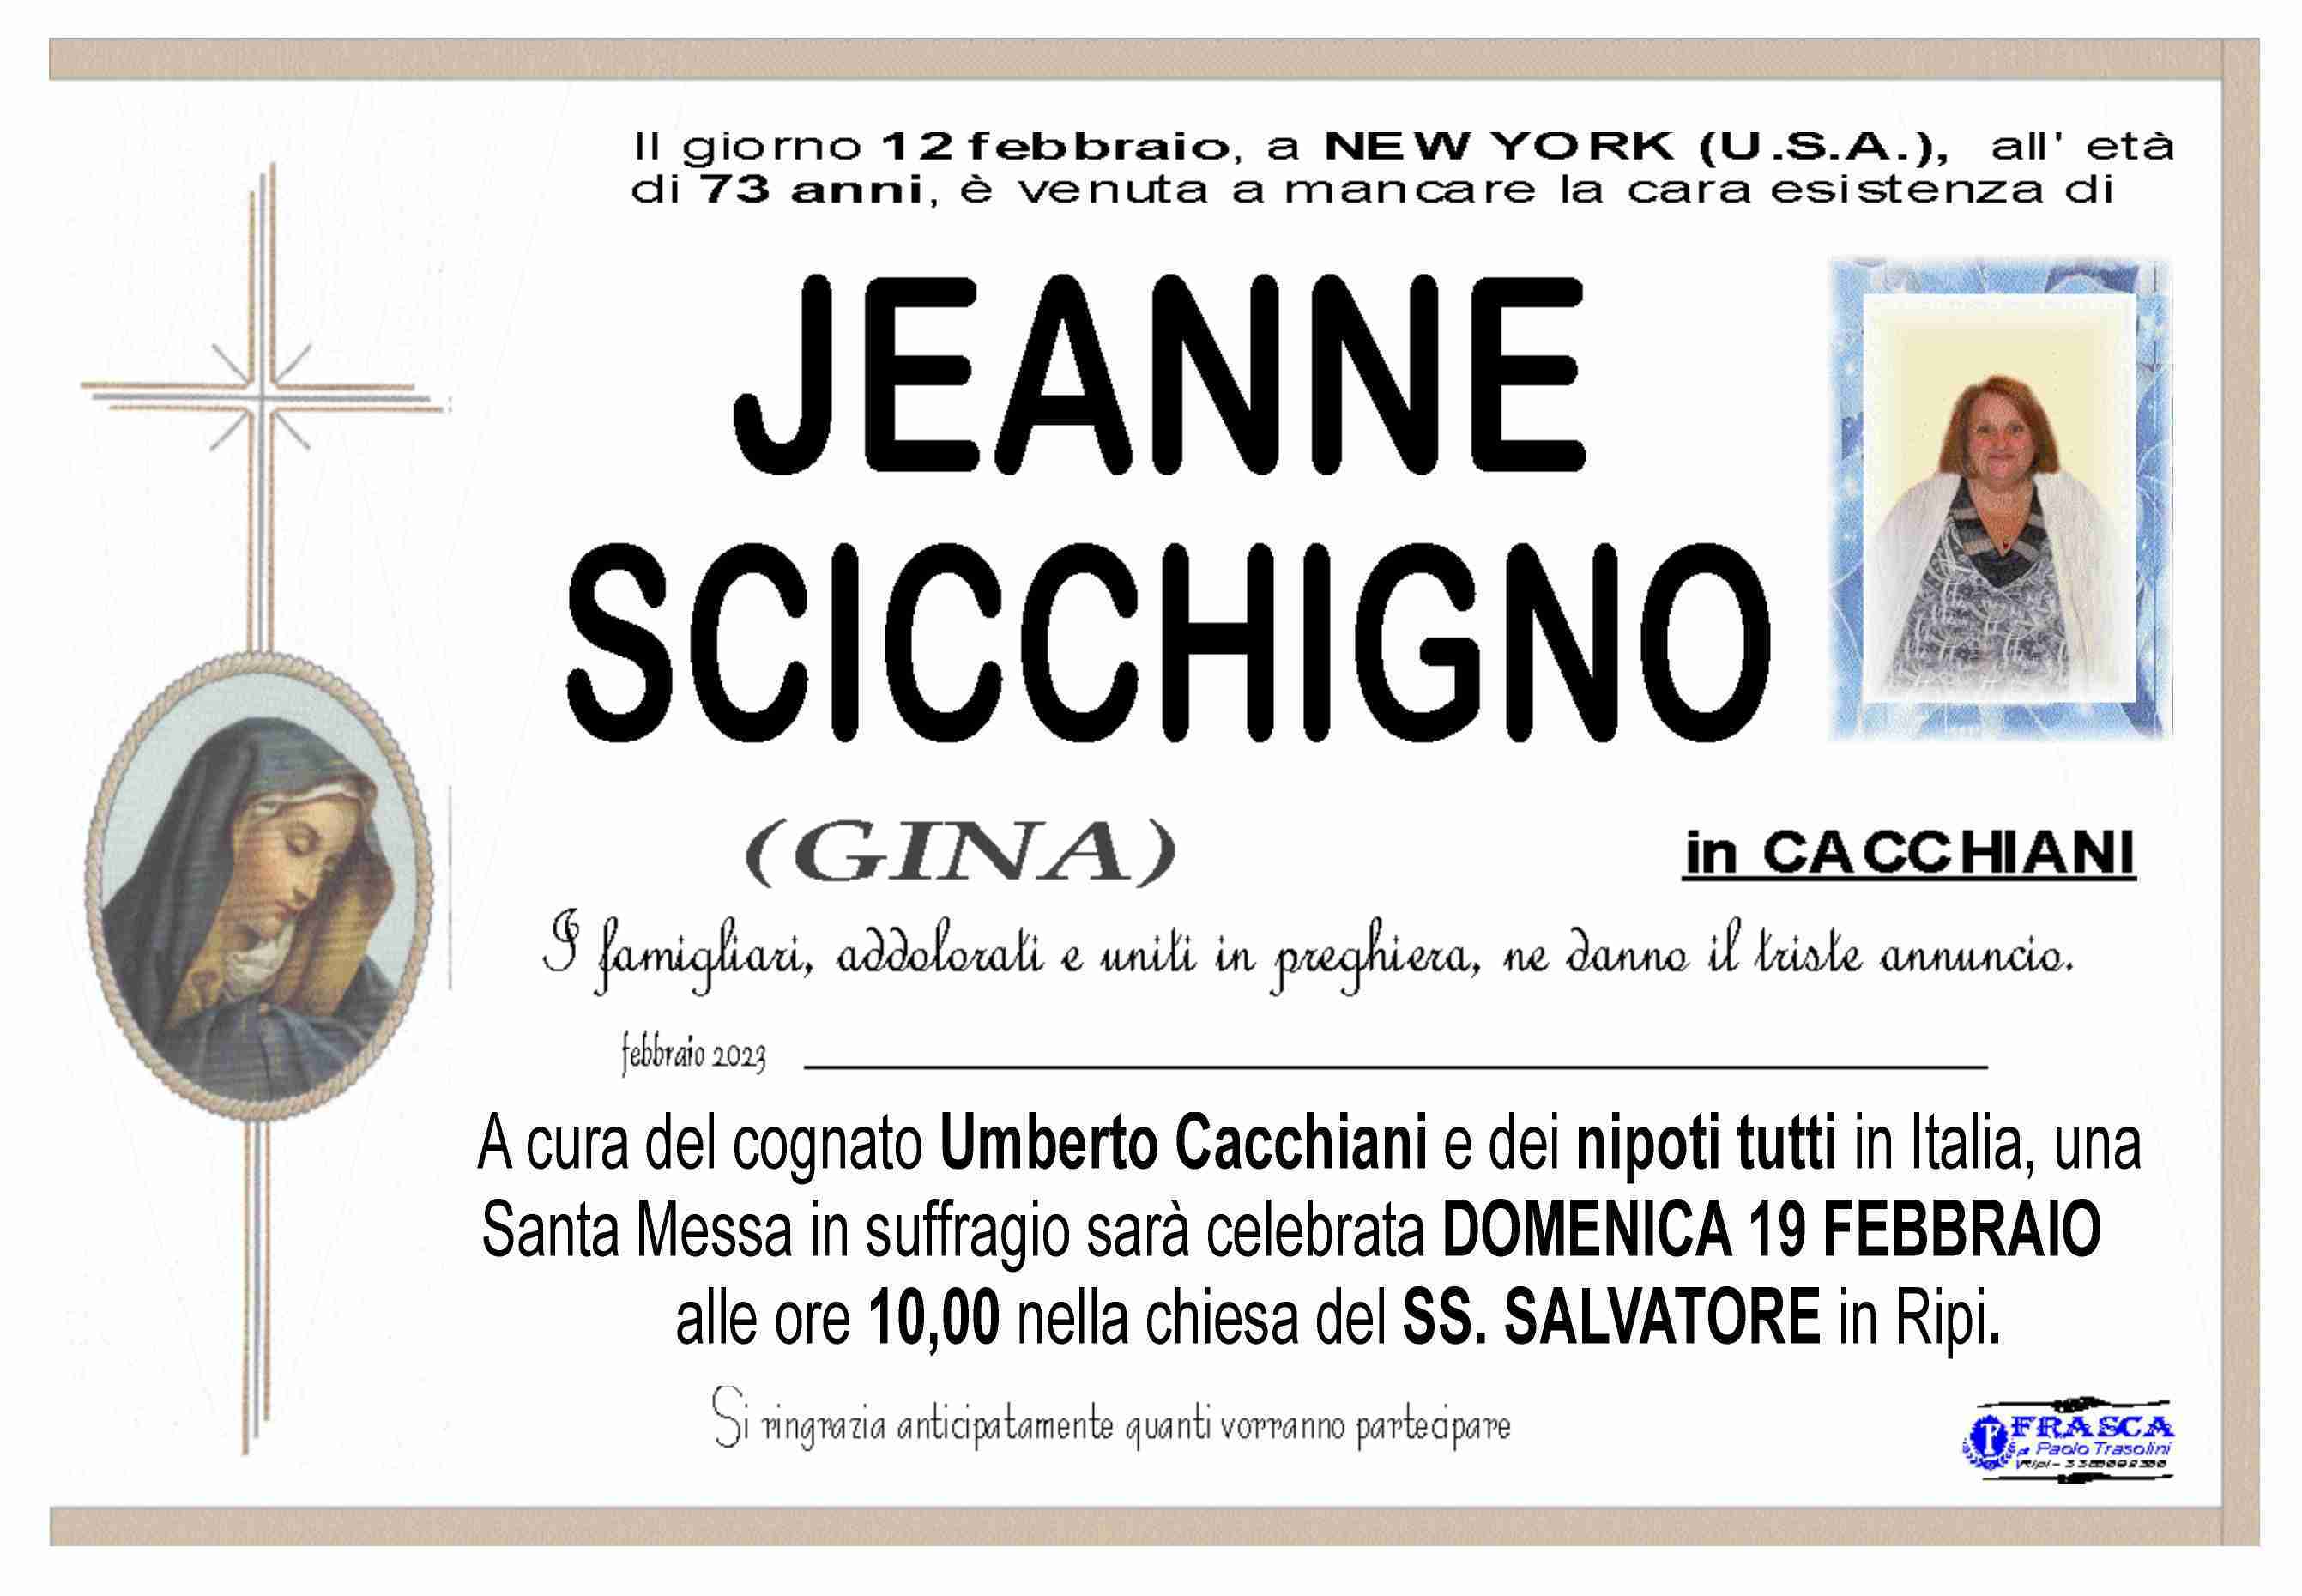 Jeanne Scicchigno